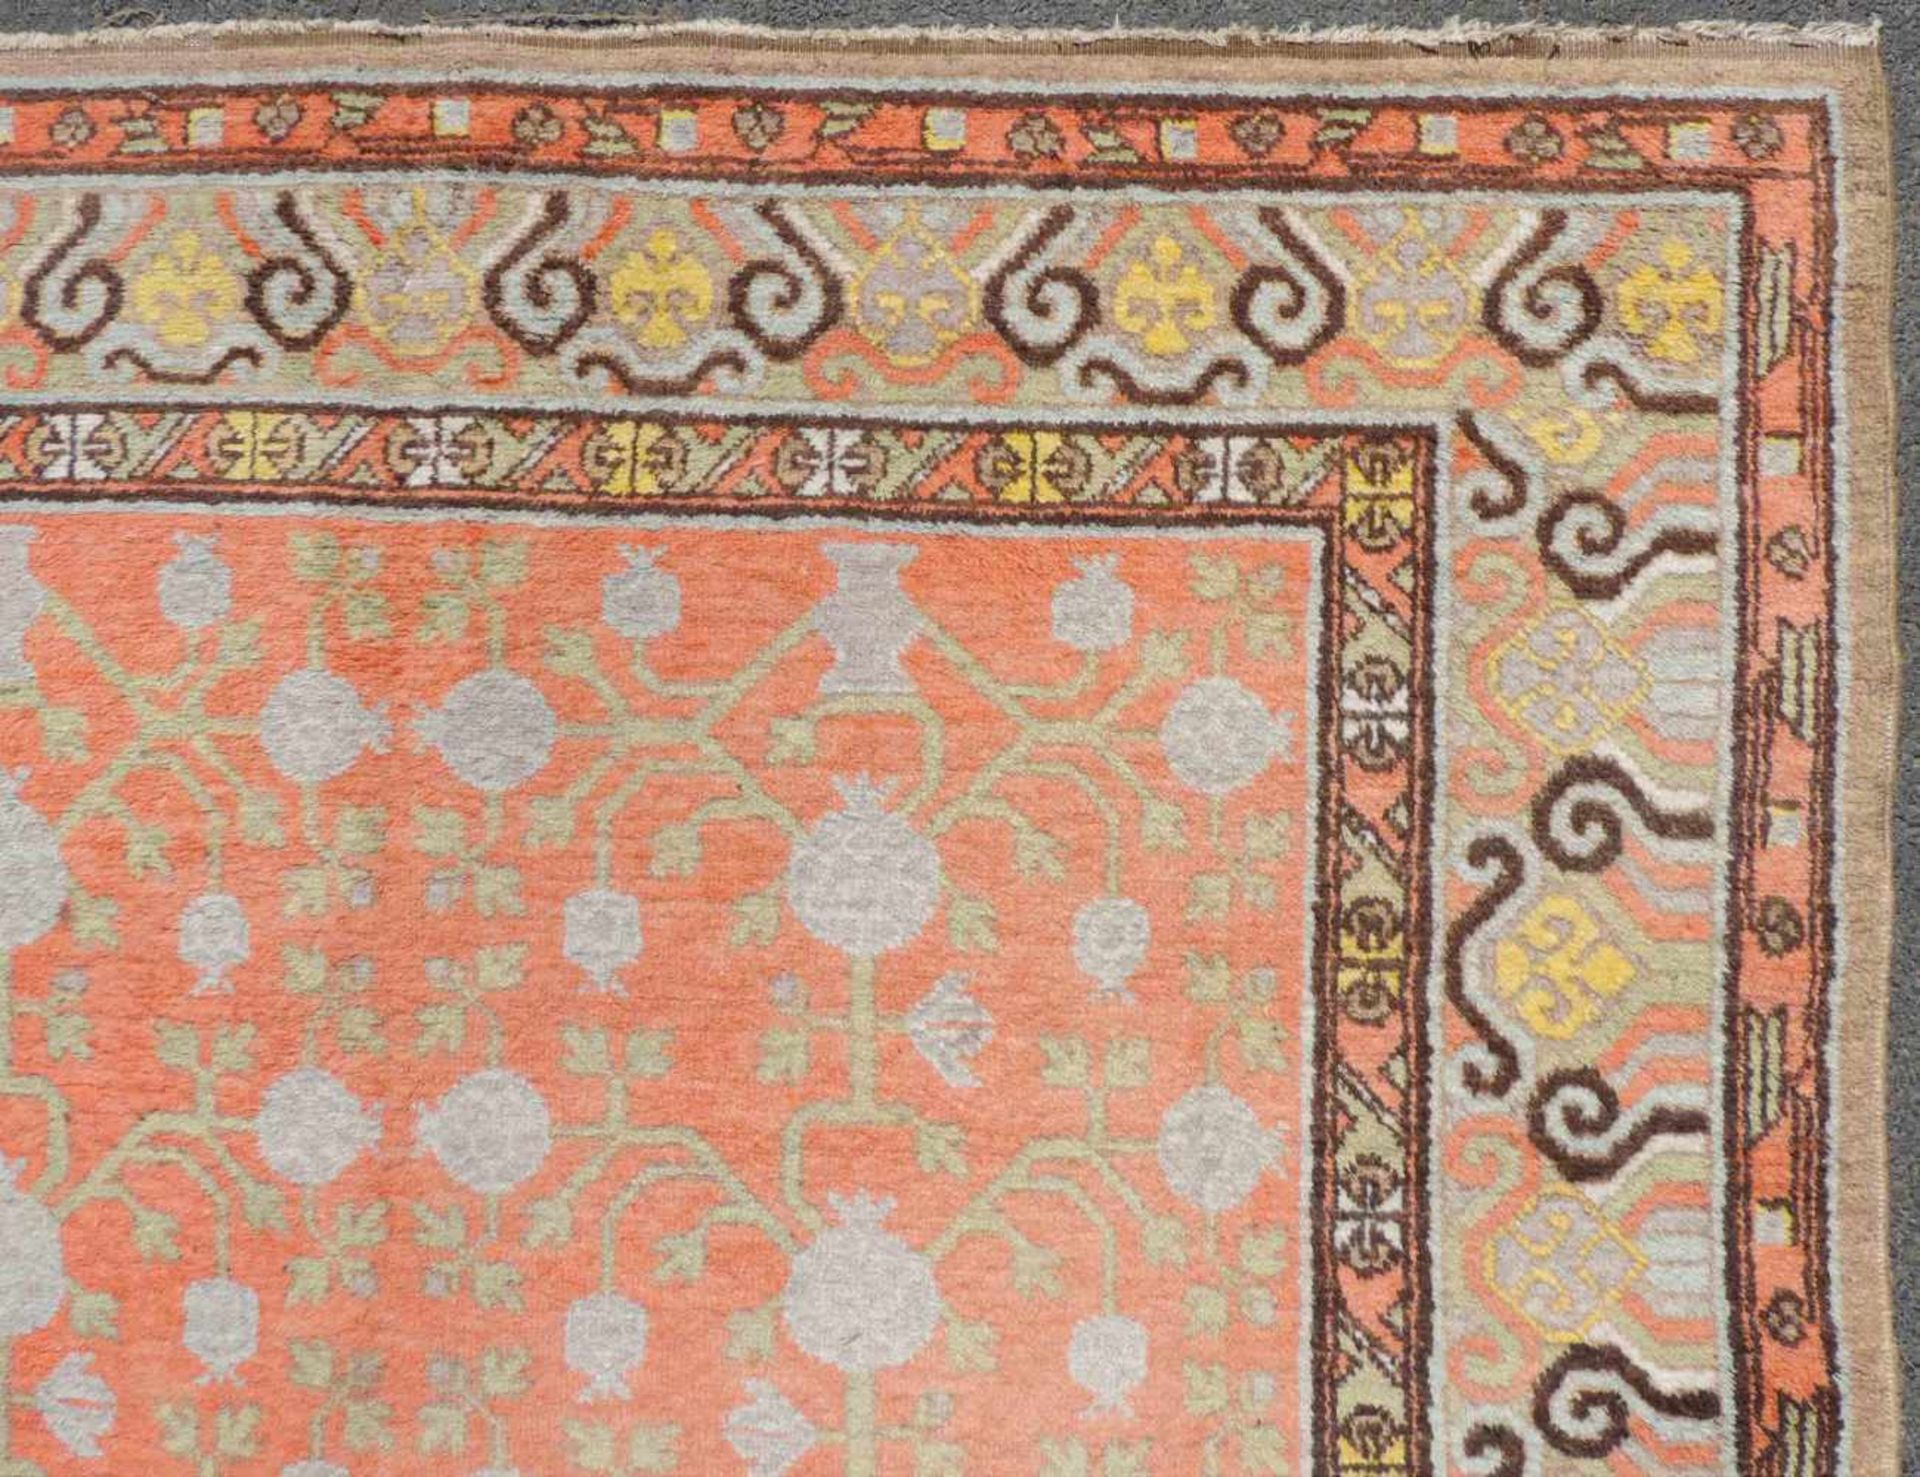 Khotan. Teppich. Zentralasien. Ost - China. Antik, um 1920. 284 cm x 174 cm. Orientteppich. - Bild 7 aus 9